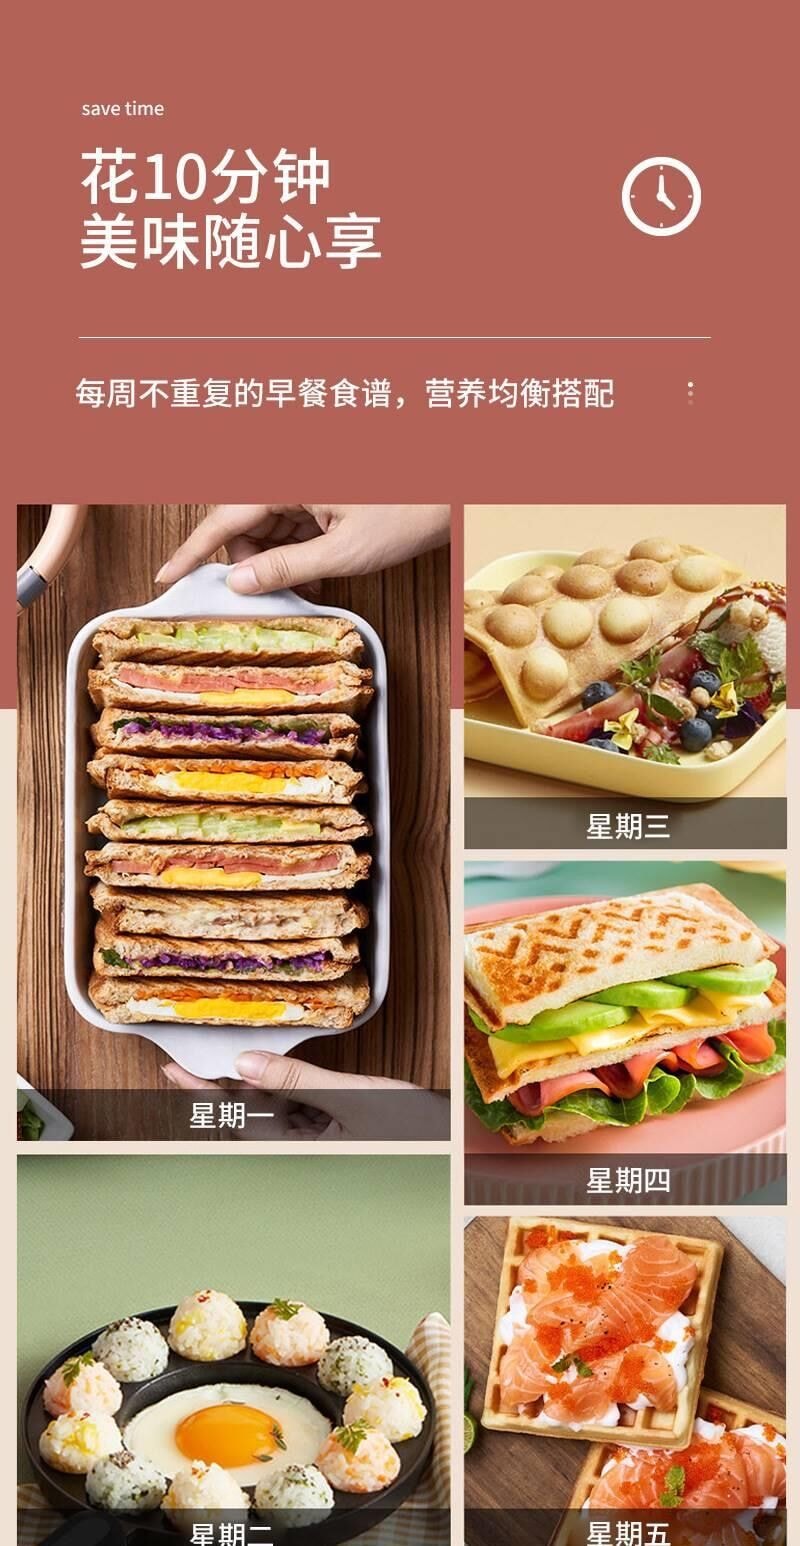 【中國直效郵件】早餐機 華夫餅機 110V美規款 紅色